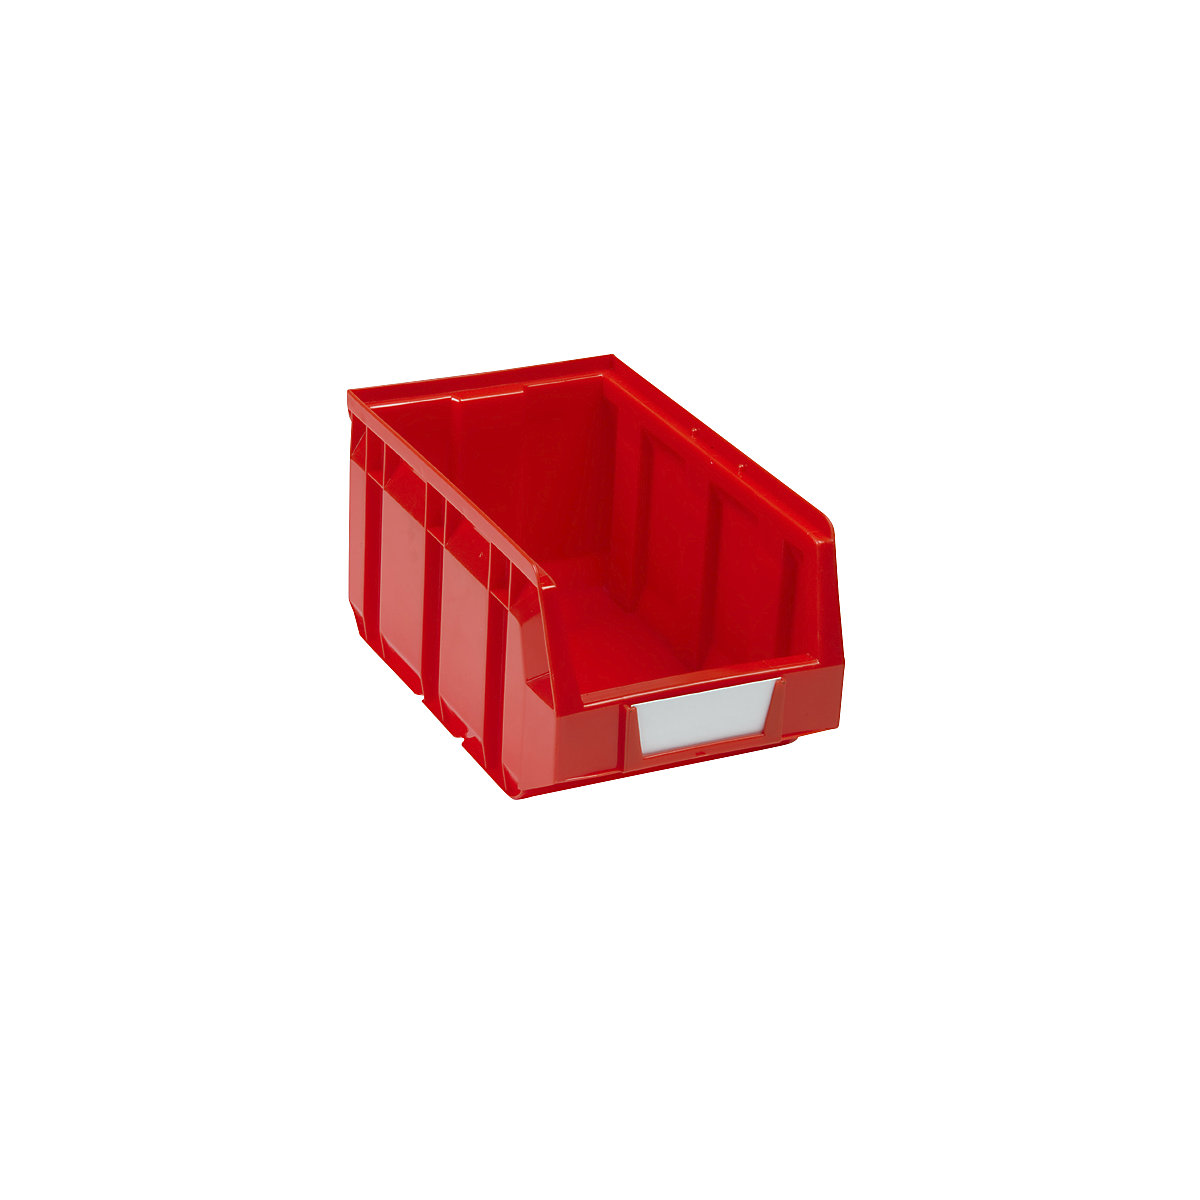 Prepravka s viditeľným obsahom z polyetylénu, d x š x v 237 x 144 x 123 mm, červená, OJ 38 ks-8